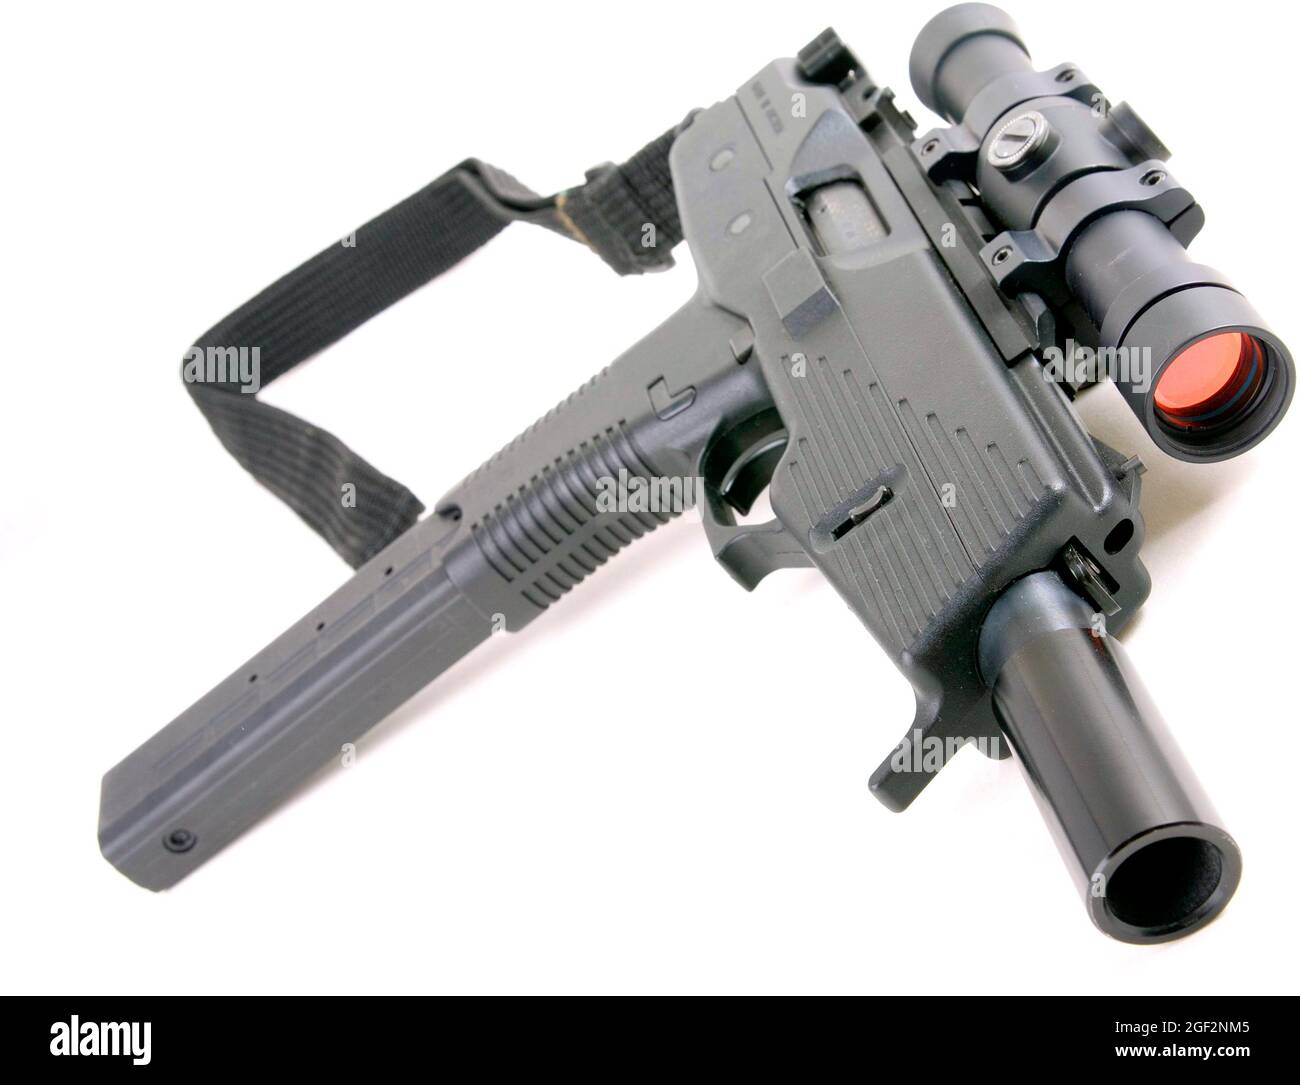 Steyr SPP, pistolet à usage spécial Banque D'Images